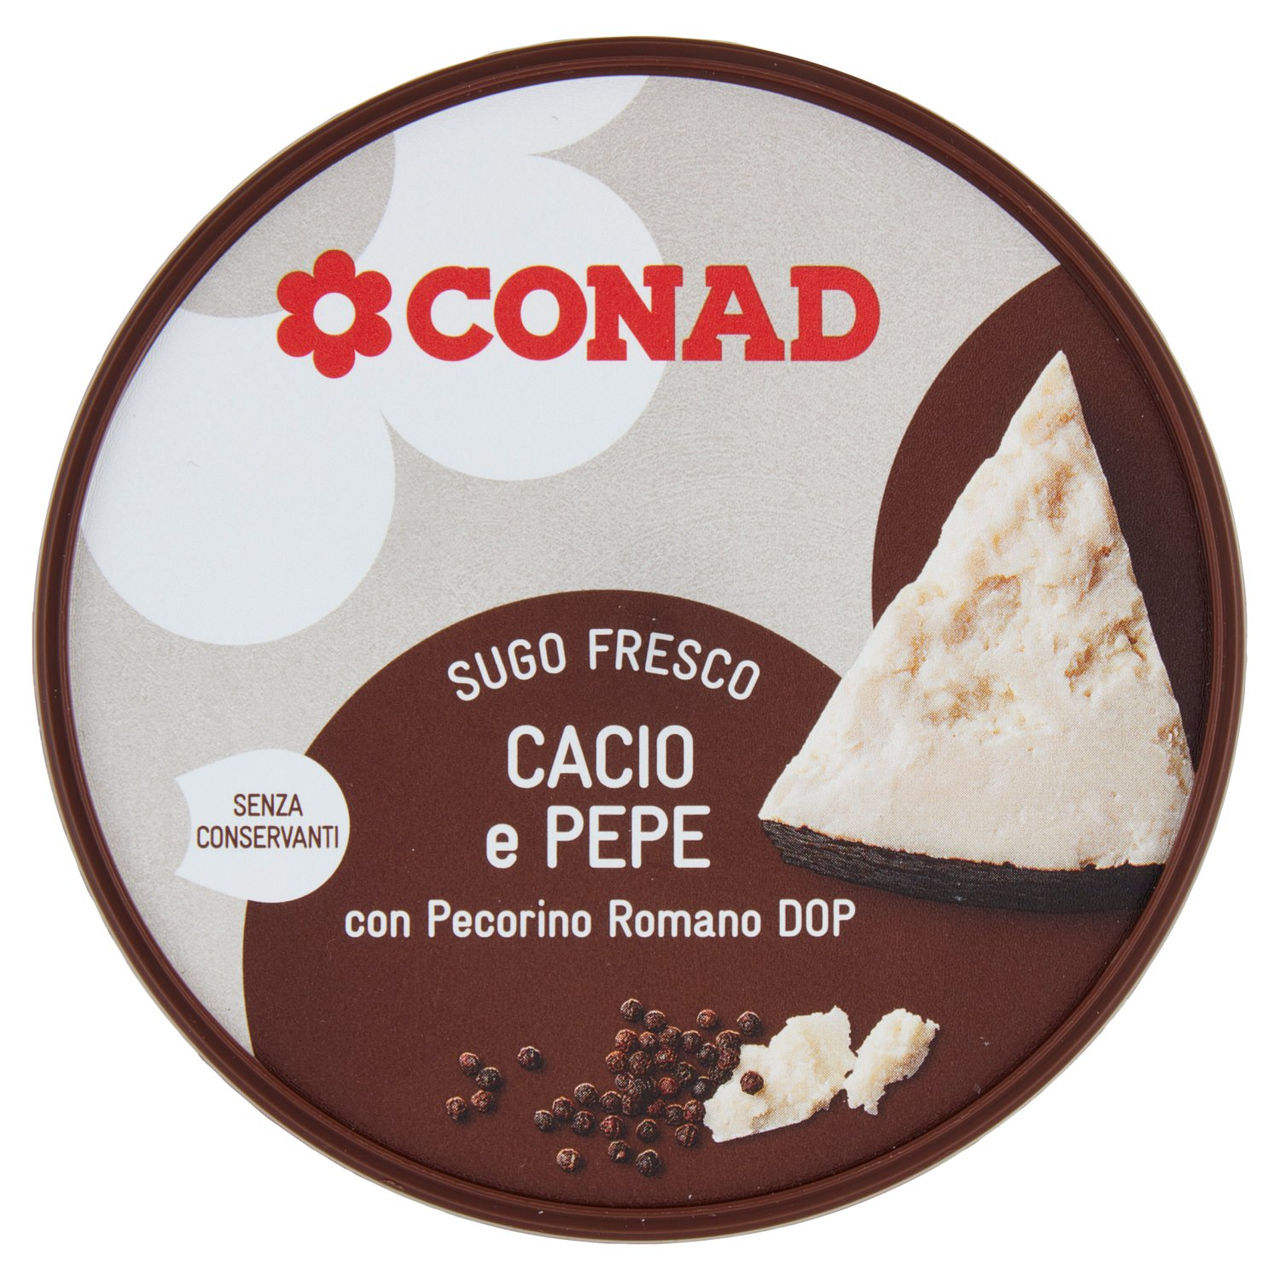 CONAD Sugo Fresco Cacio e Pepe con Pecorino Romano DOP 150 g